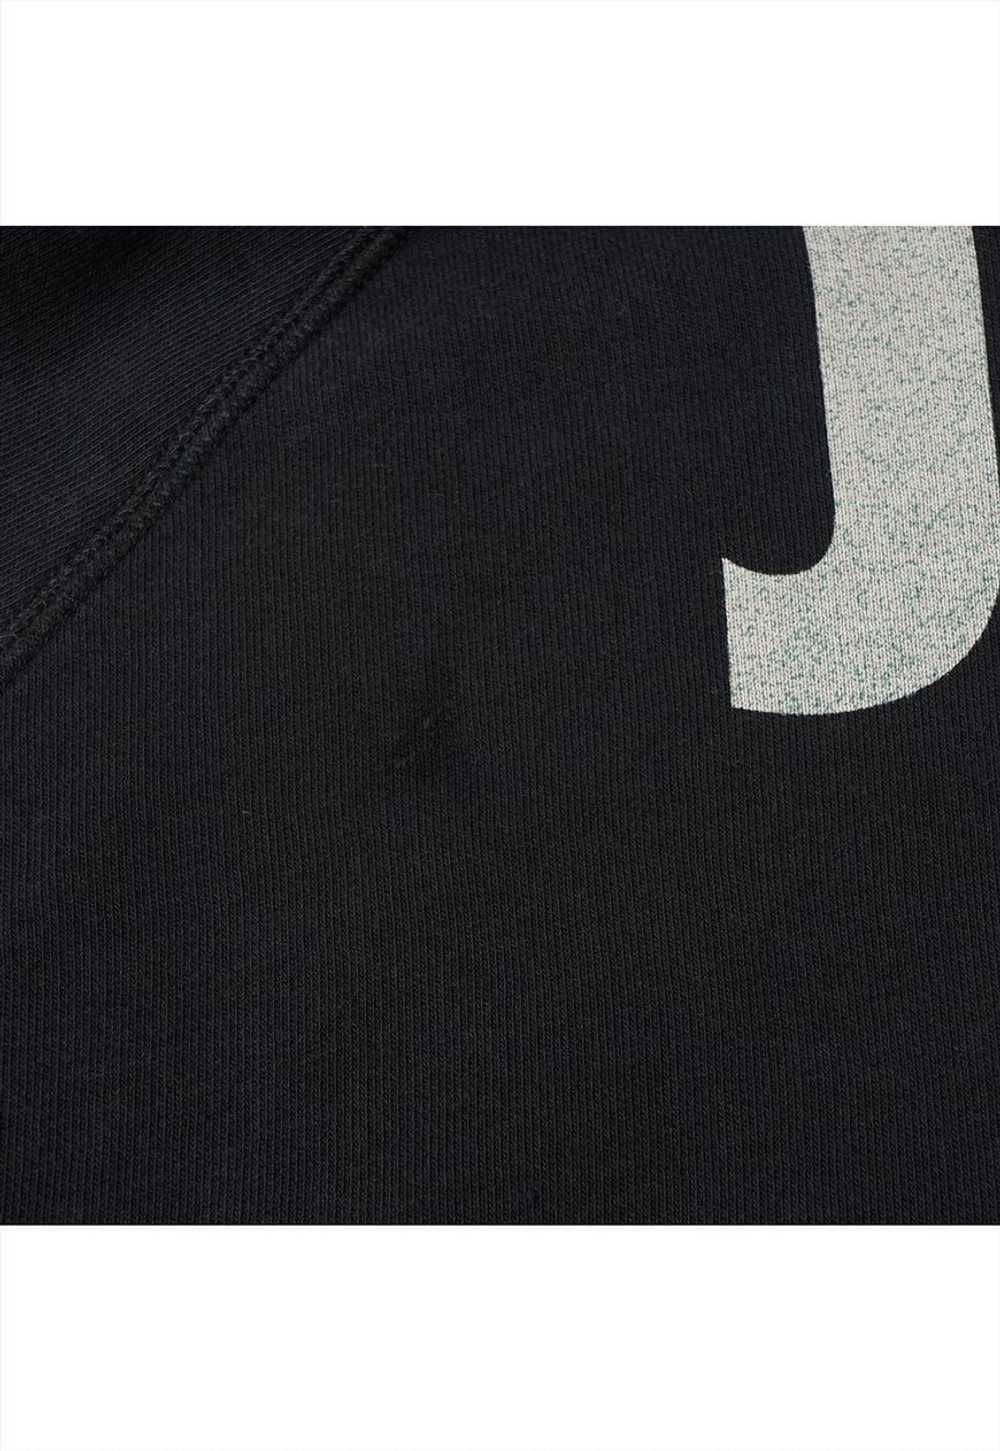 Nike Just Do It Slogan Black Hoodie Womens - image 3